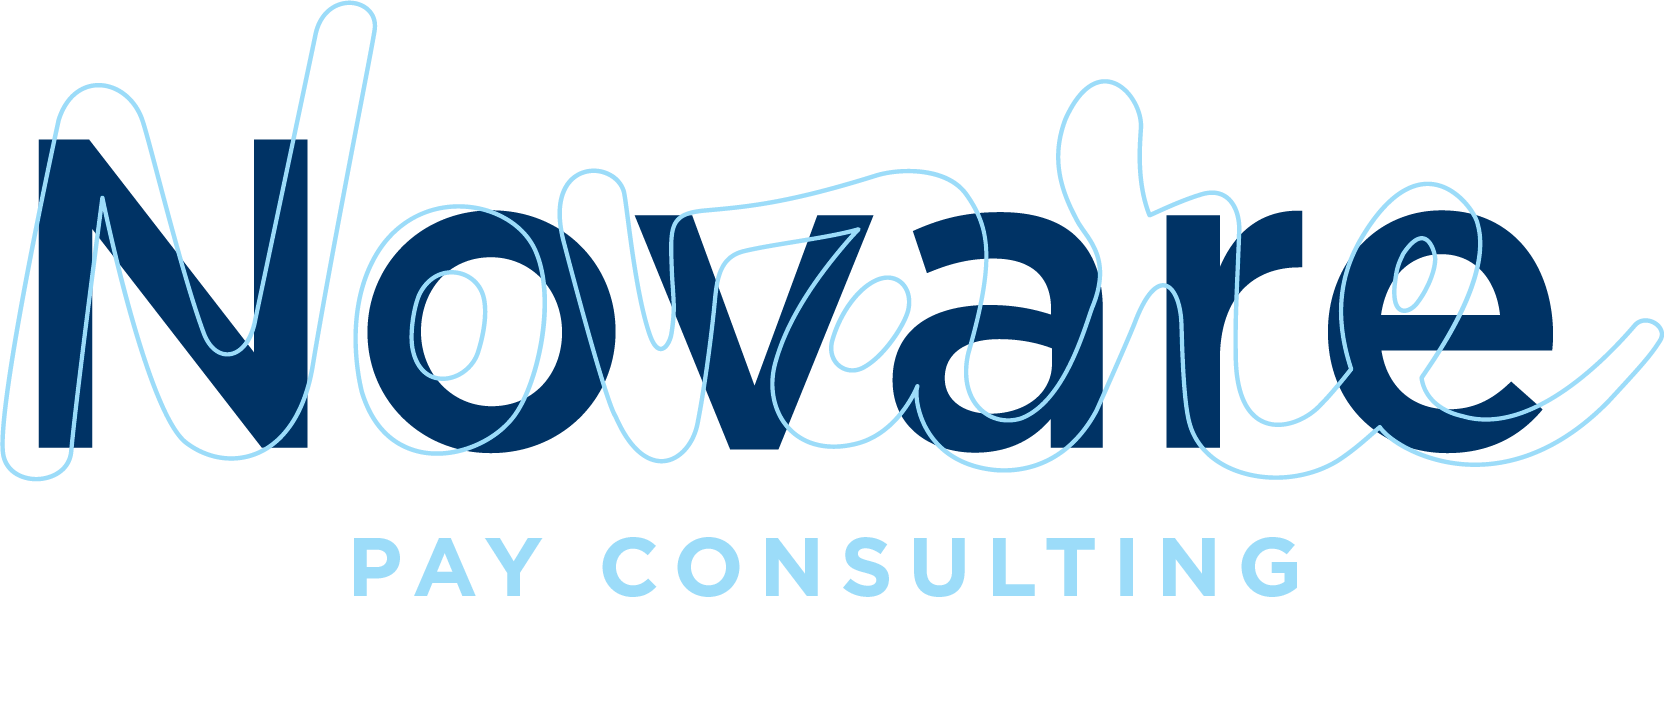 Novare_Pay_Consulting_blue_lightblue